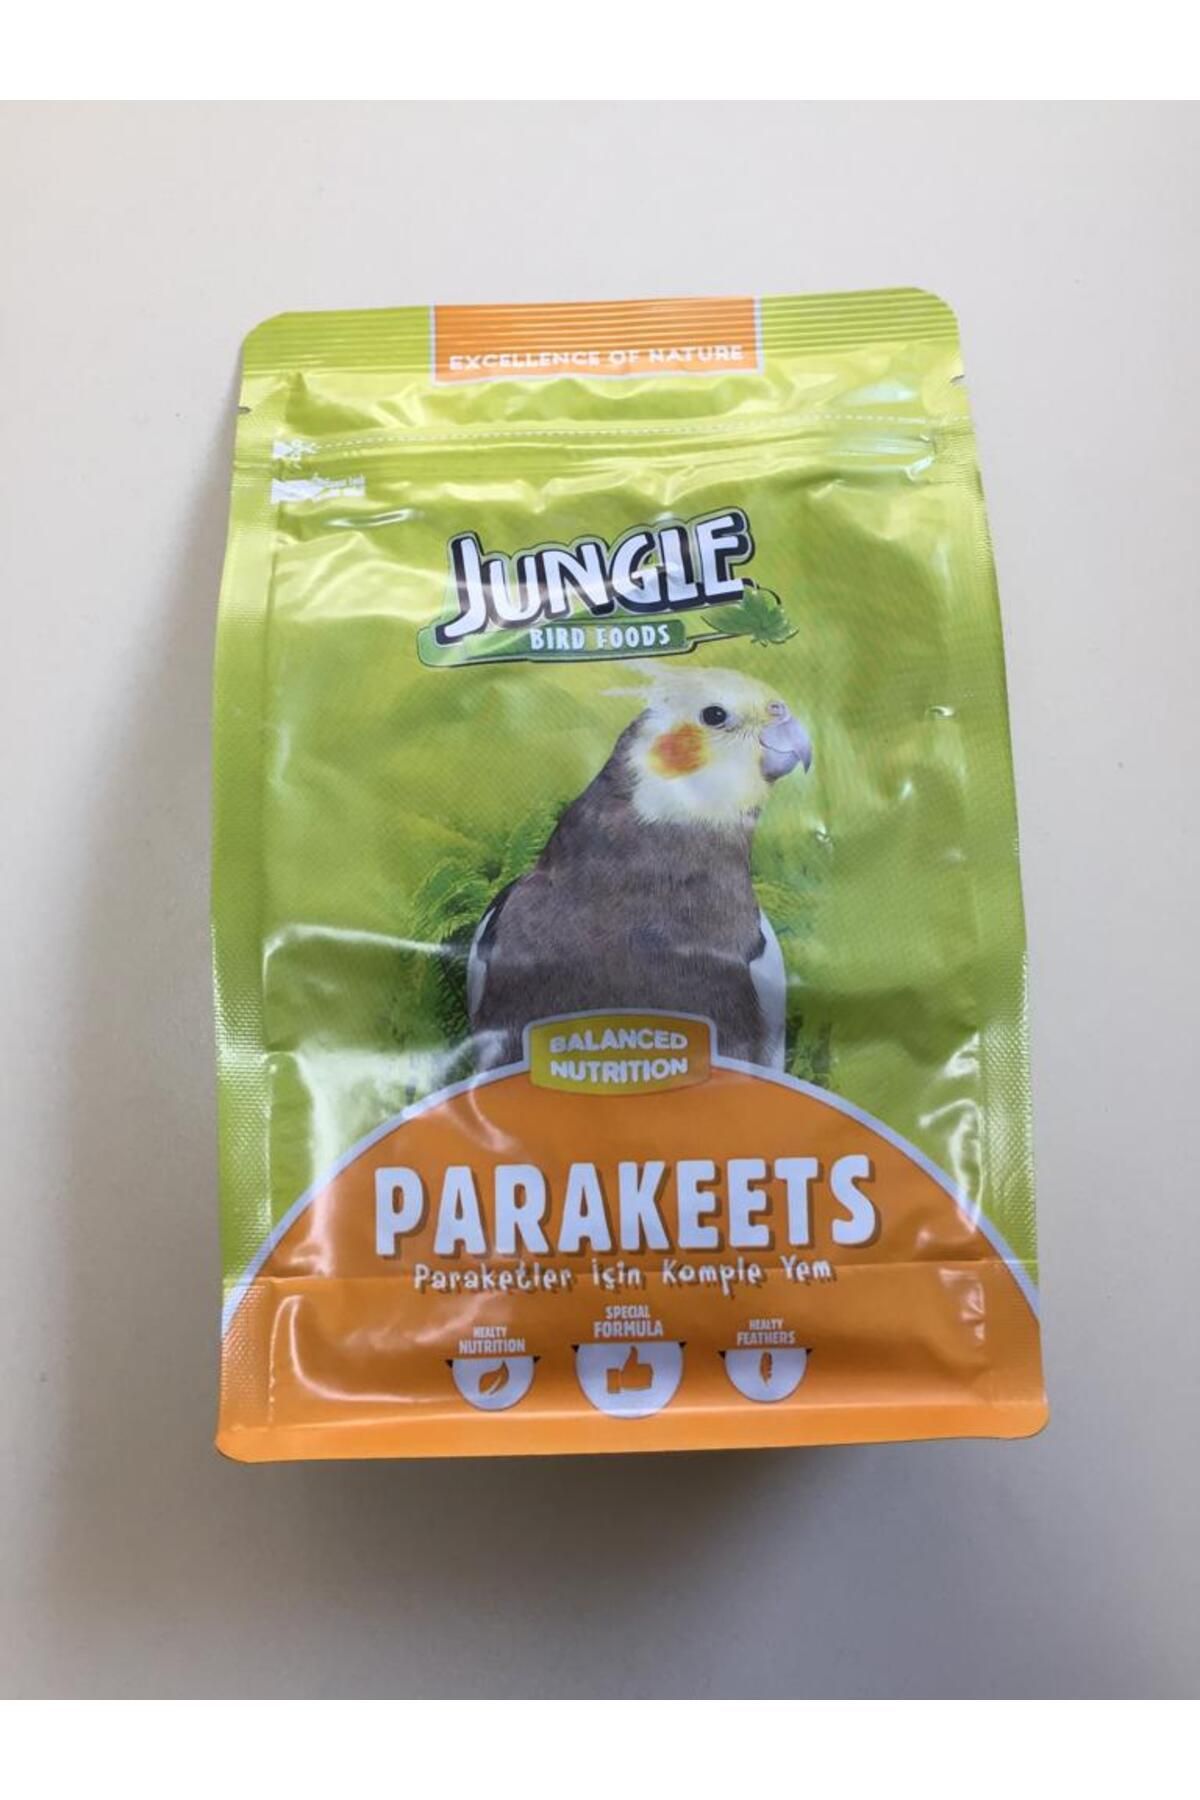 Jungle PARAKEETS BIRD FOODS